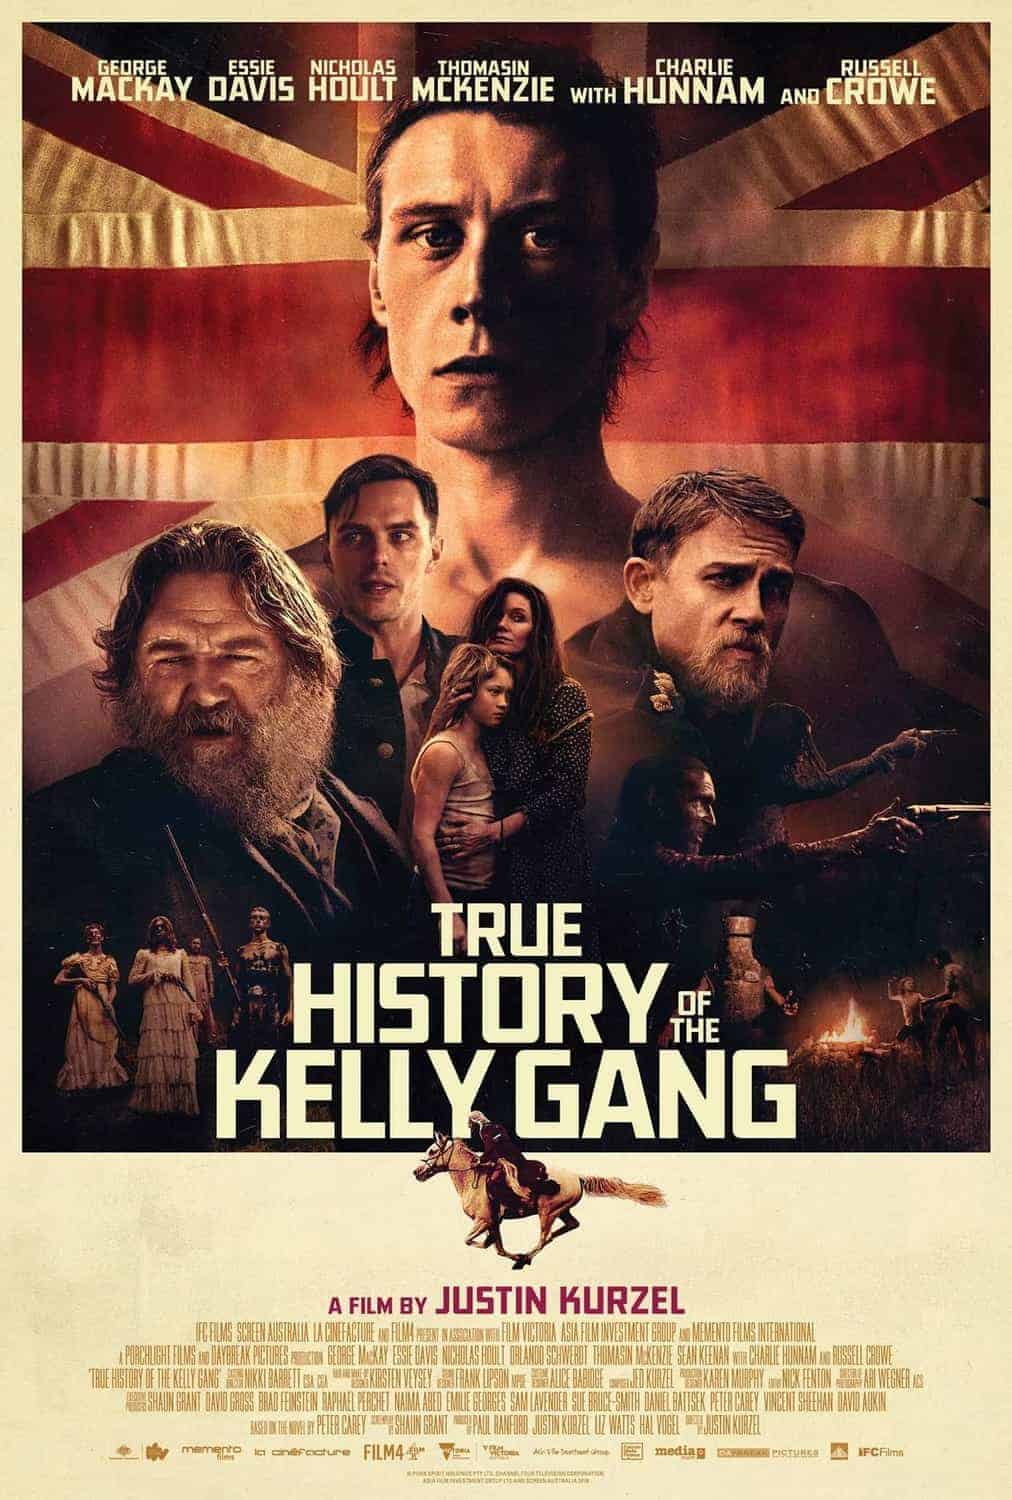 true history of kelly gang